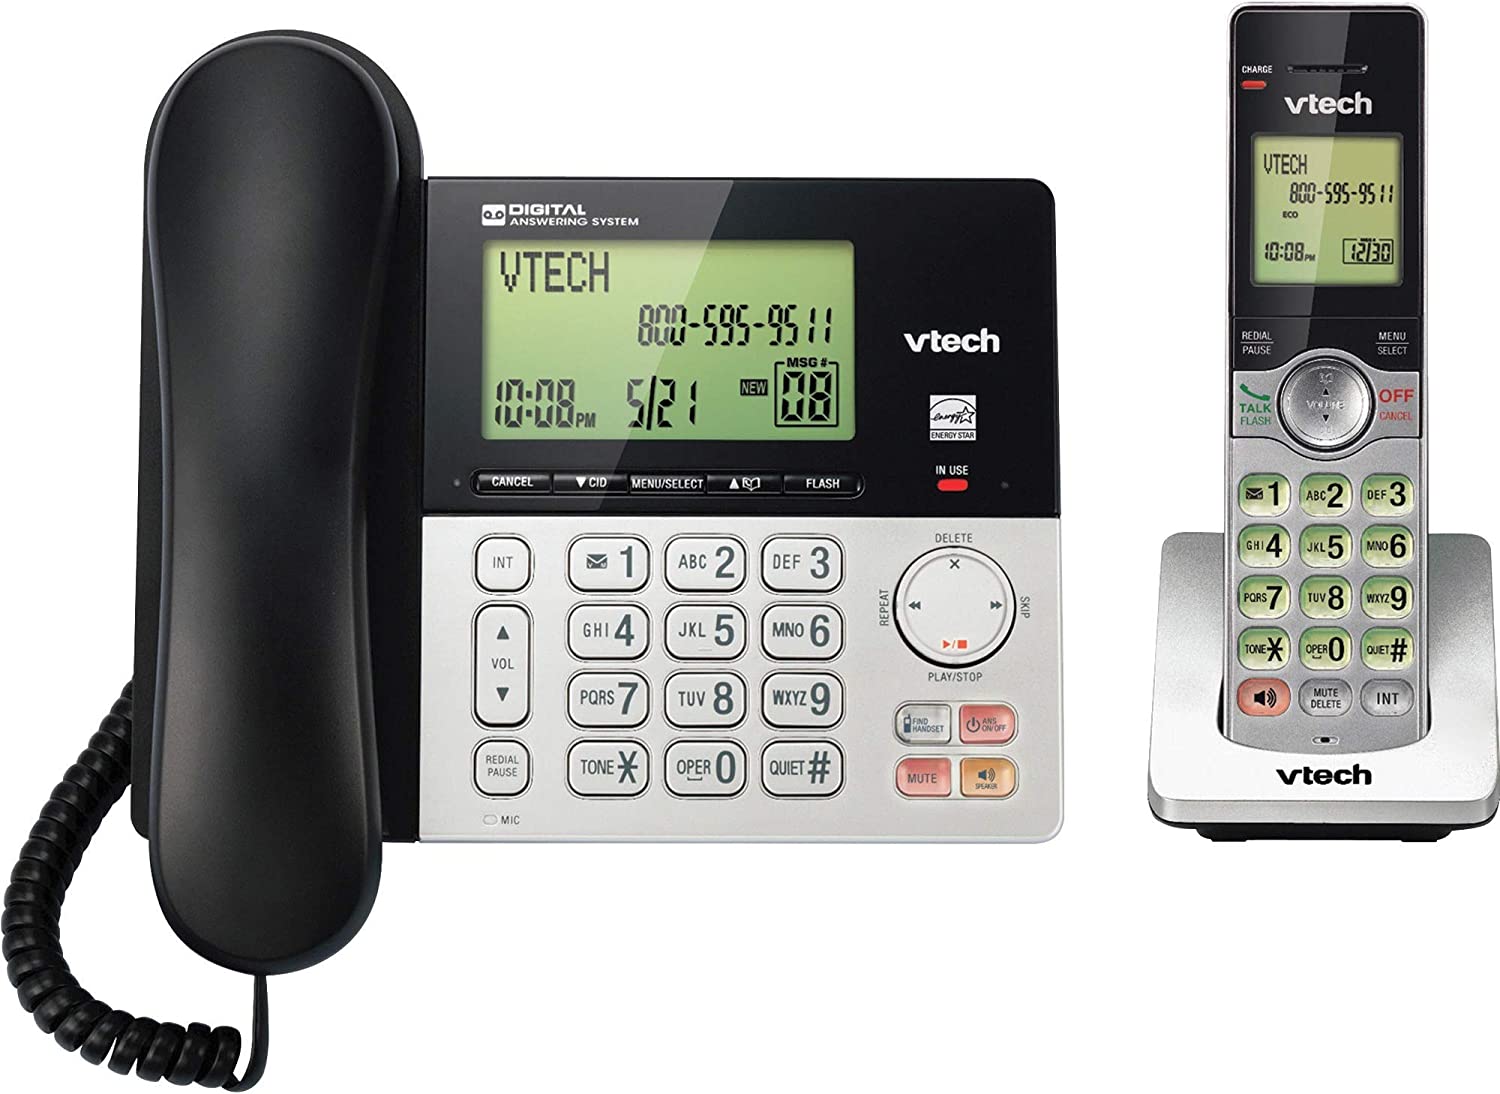 VTech CS6949 DECT 6.0 Standard Phone - Black, Silver